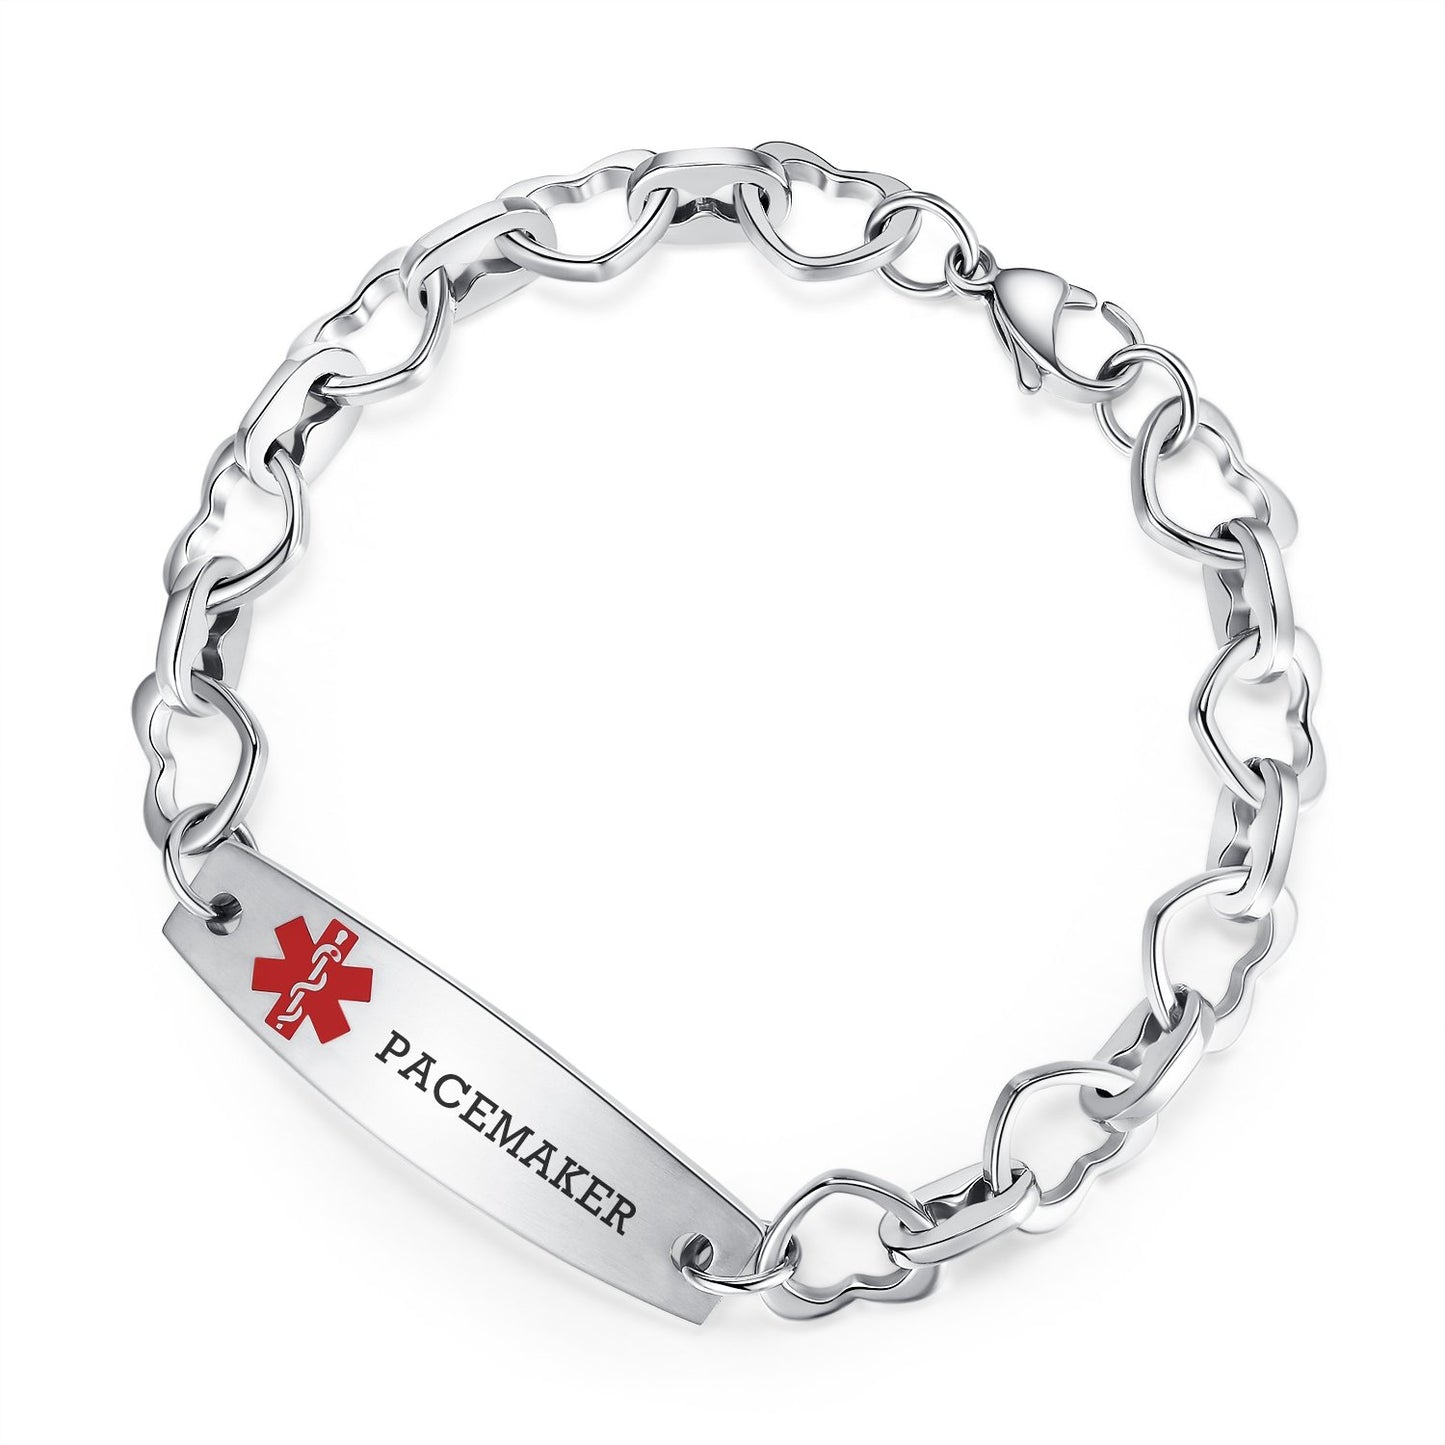 Heart Medical Alert Bracelets for Women Stainless Steel Heart Link Medical bracelets